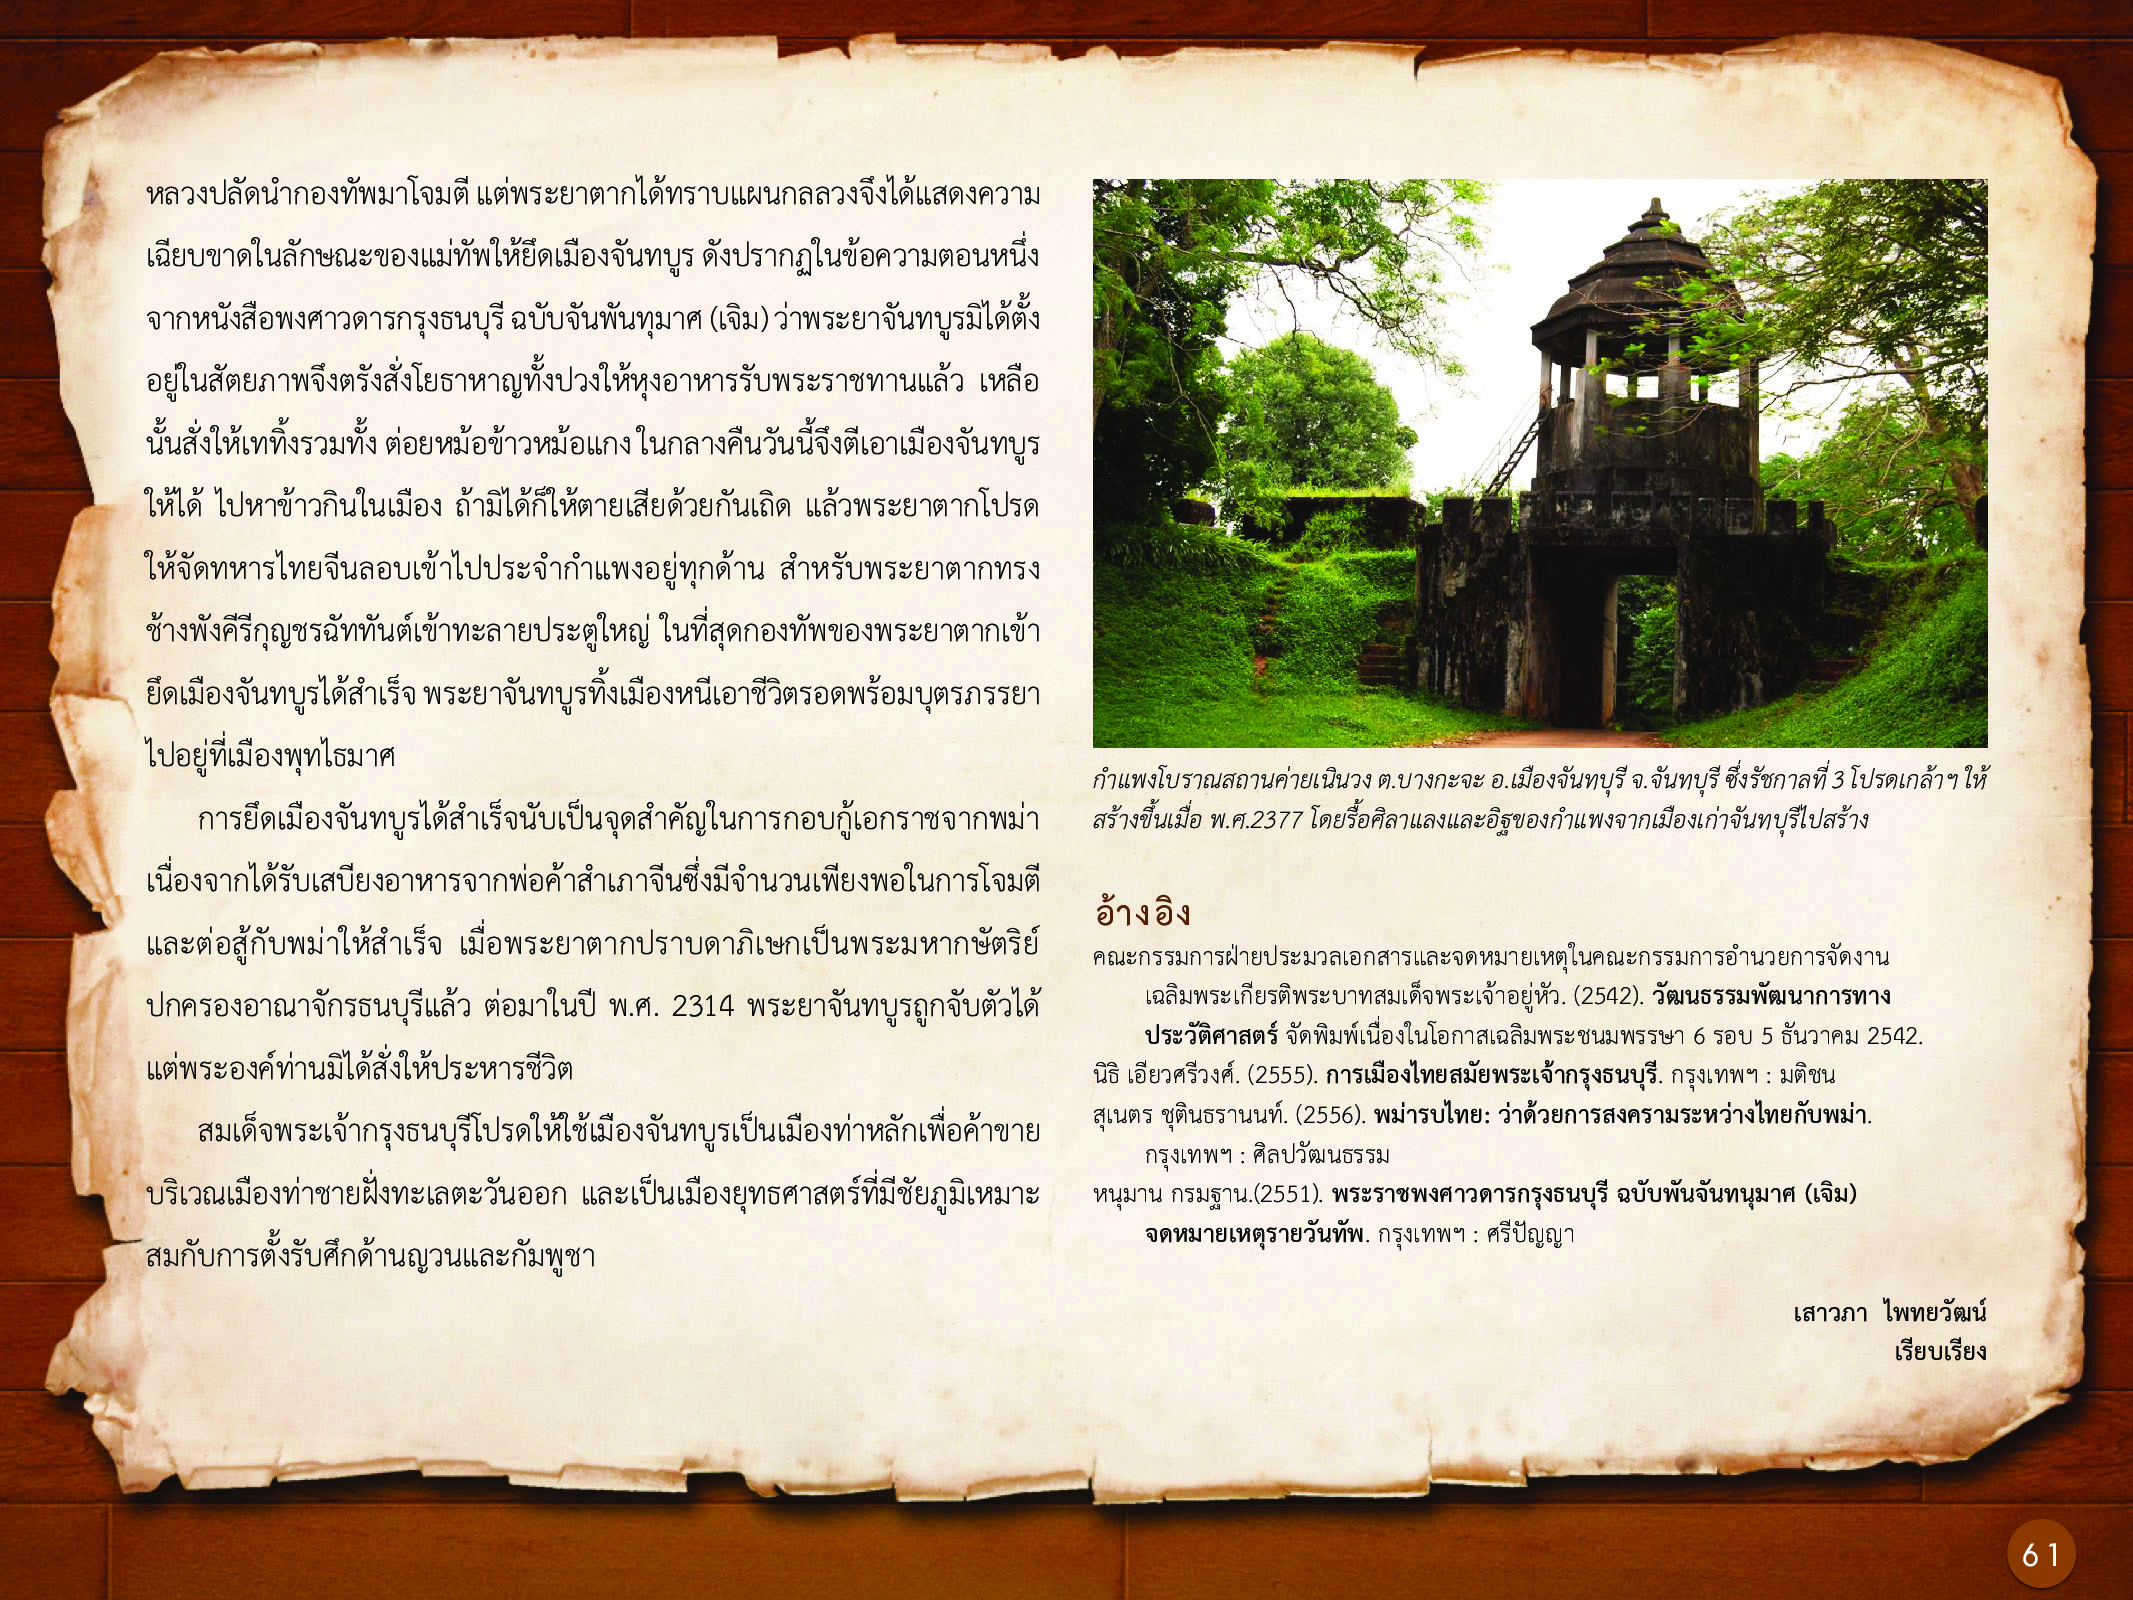 ประวัติศาสตร์กรุงธนบุรี ./images/history_dhonburi/61.jpg